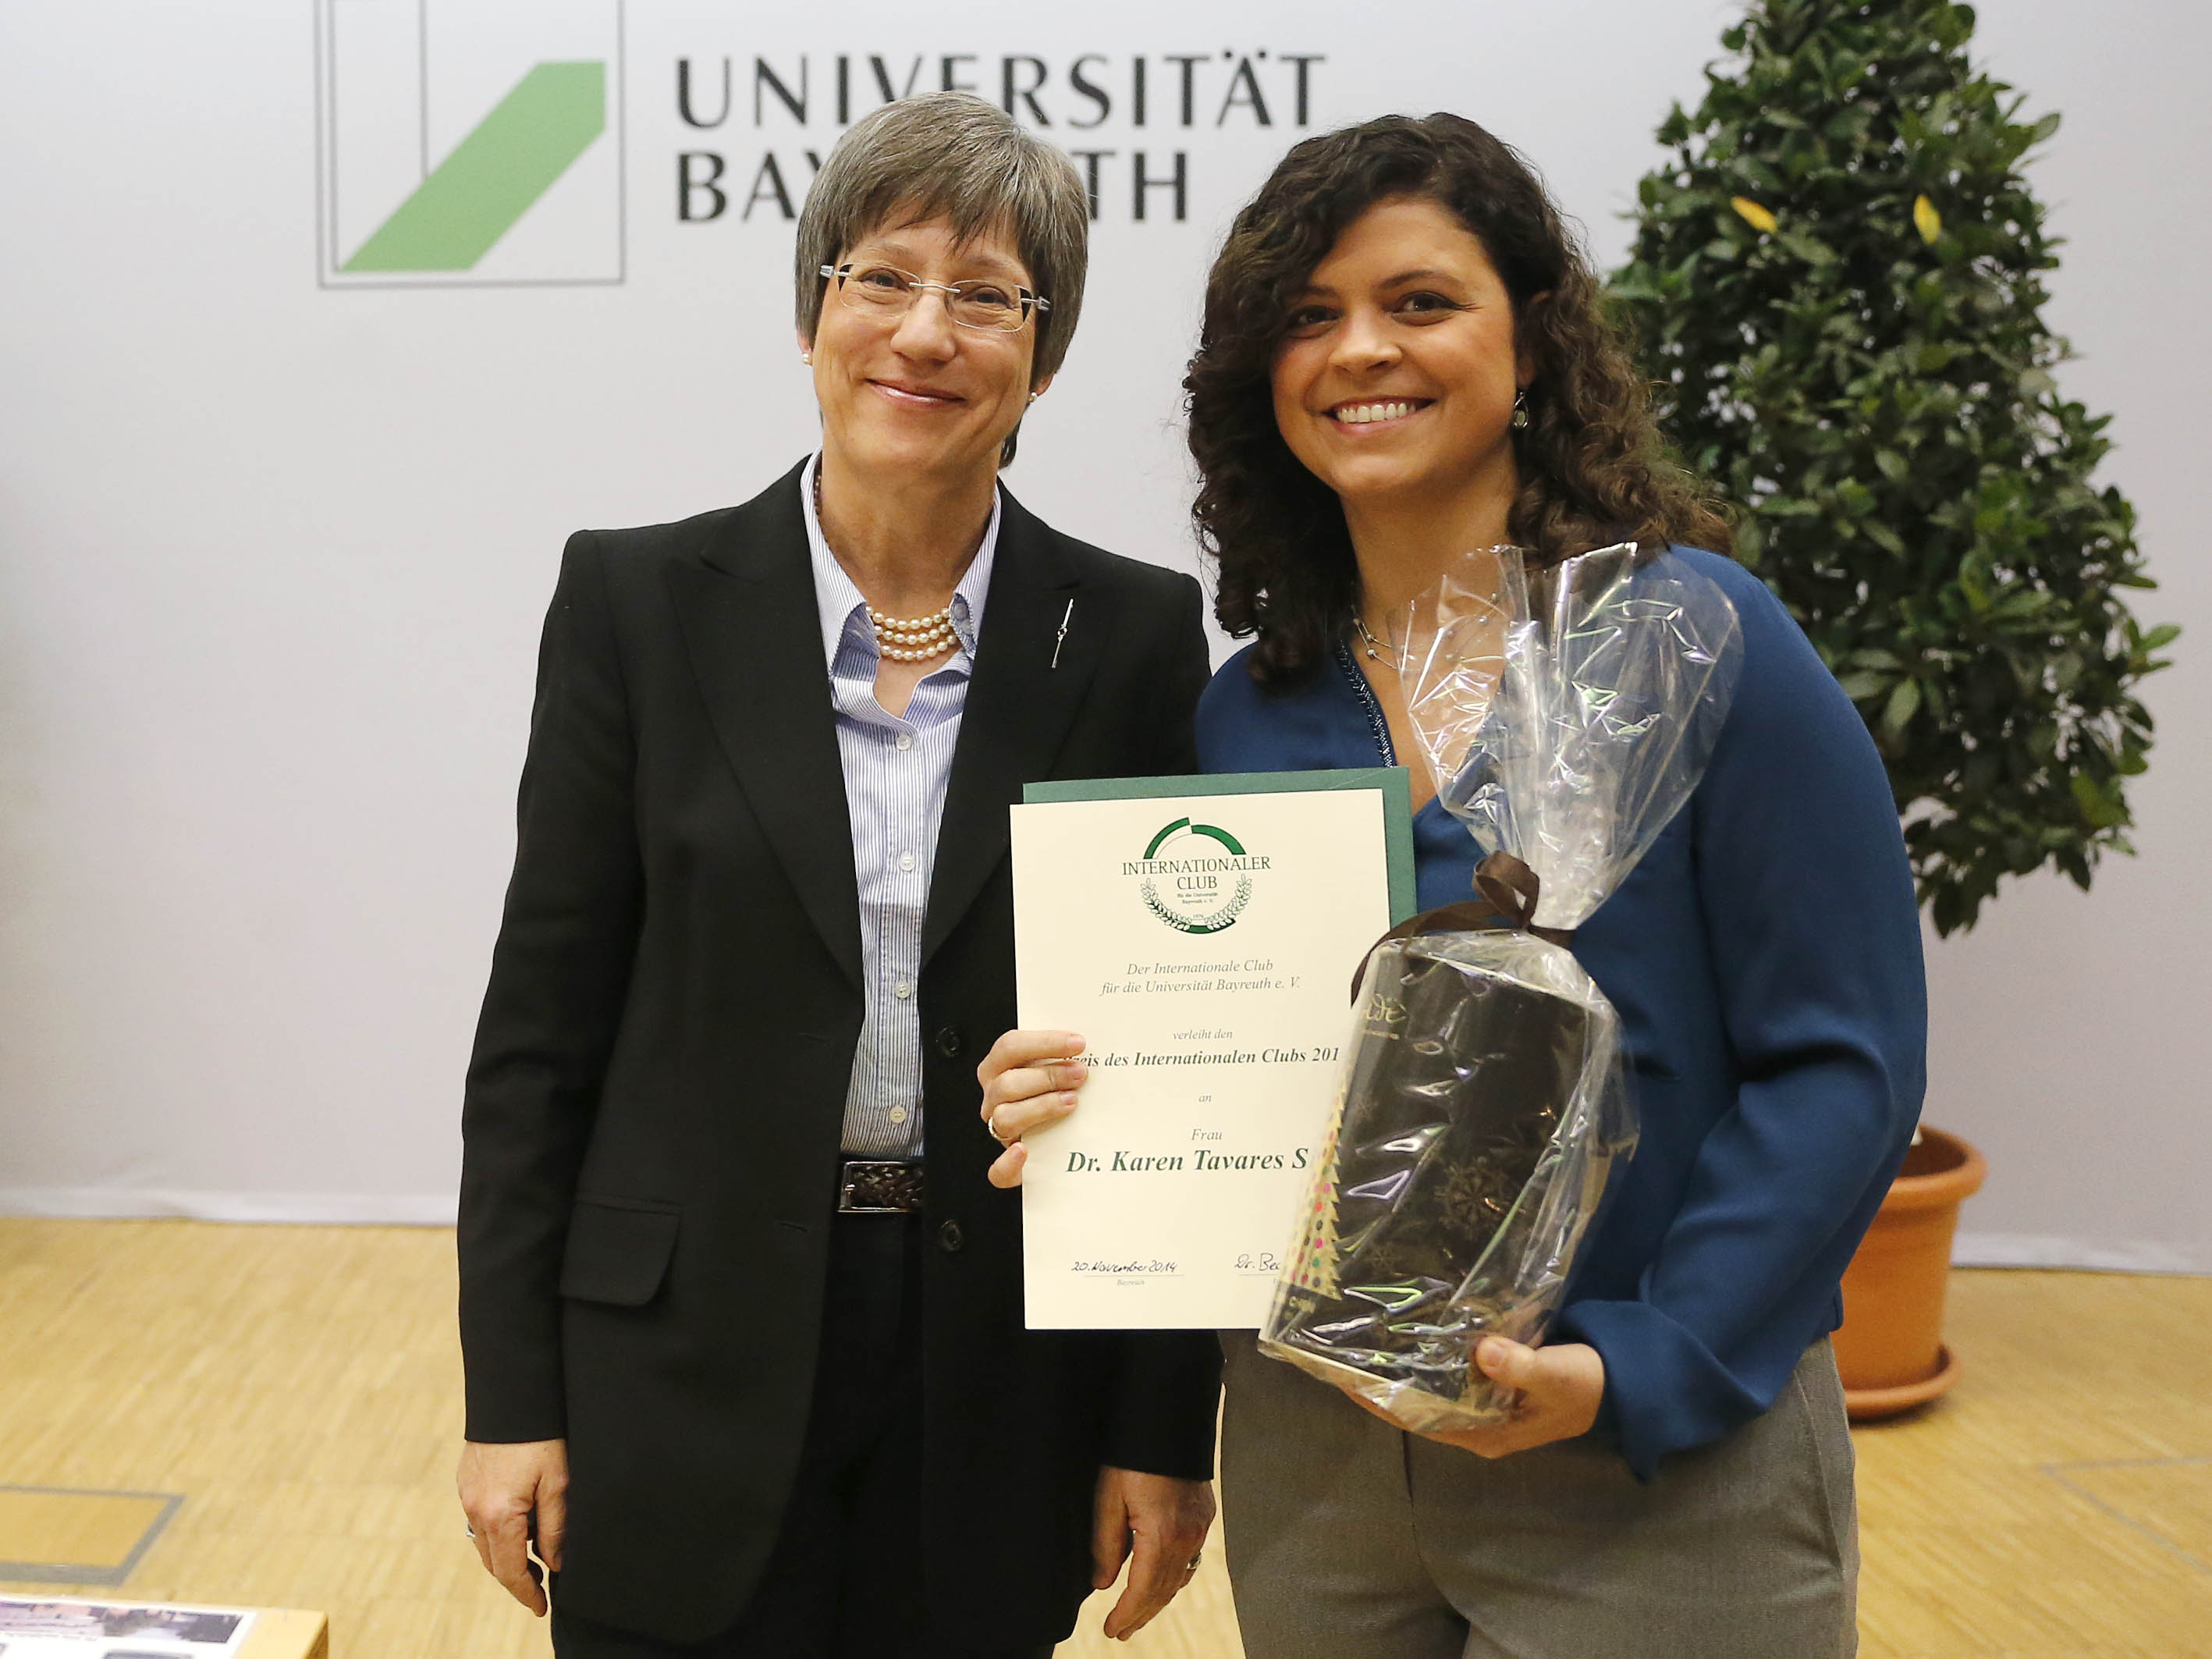 Dr. Karen Tavares Silva Akademische Jahresfeier 2014 Universität Bayreuth